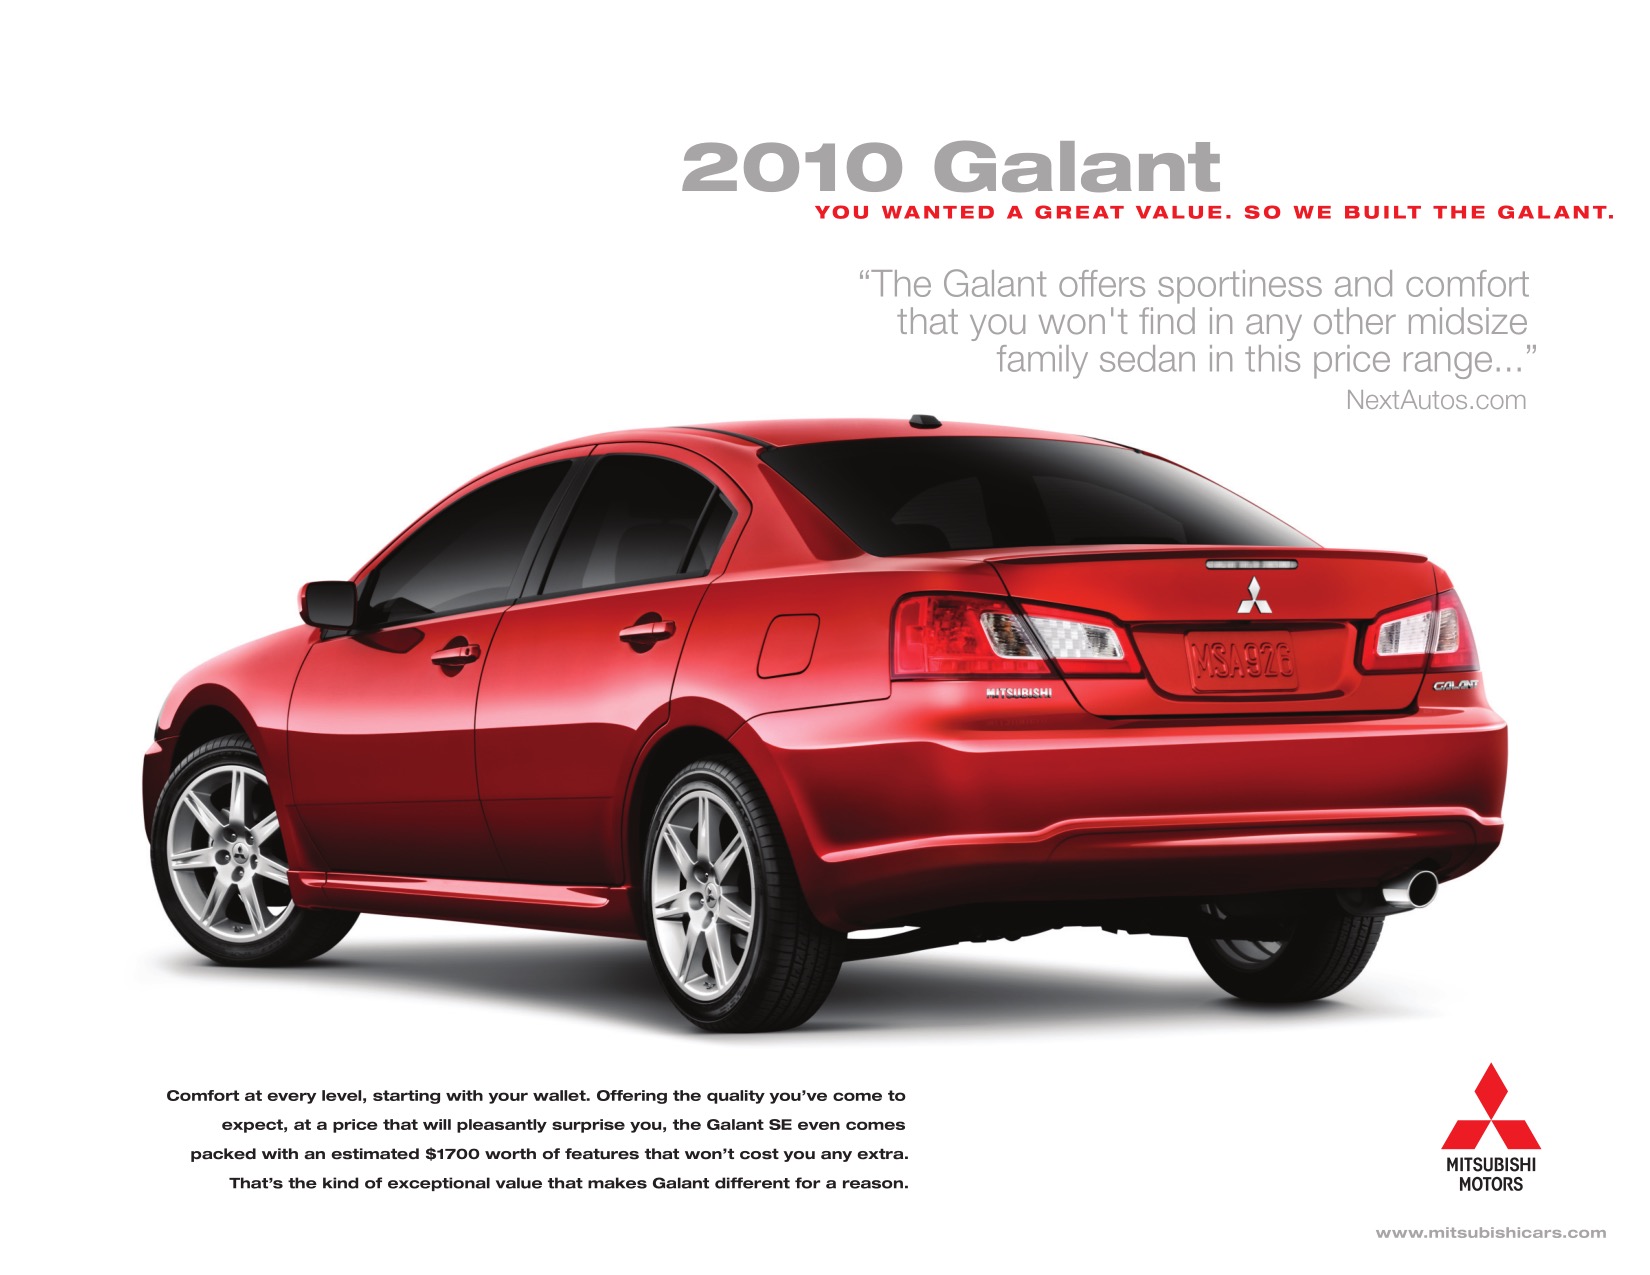 2010 Mitsubishi Galant Brochure